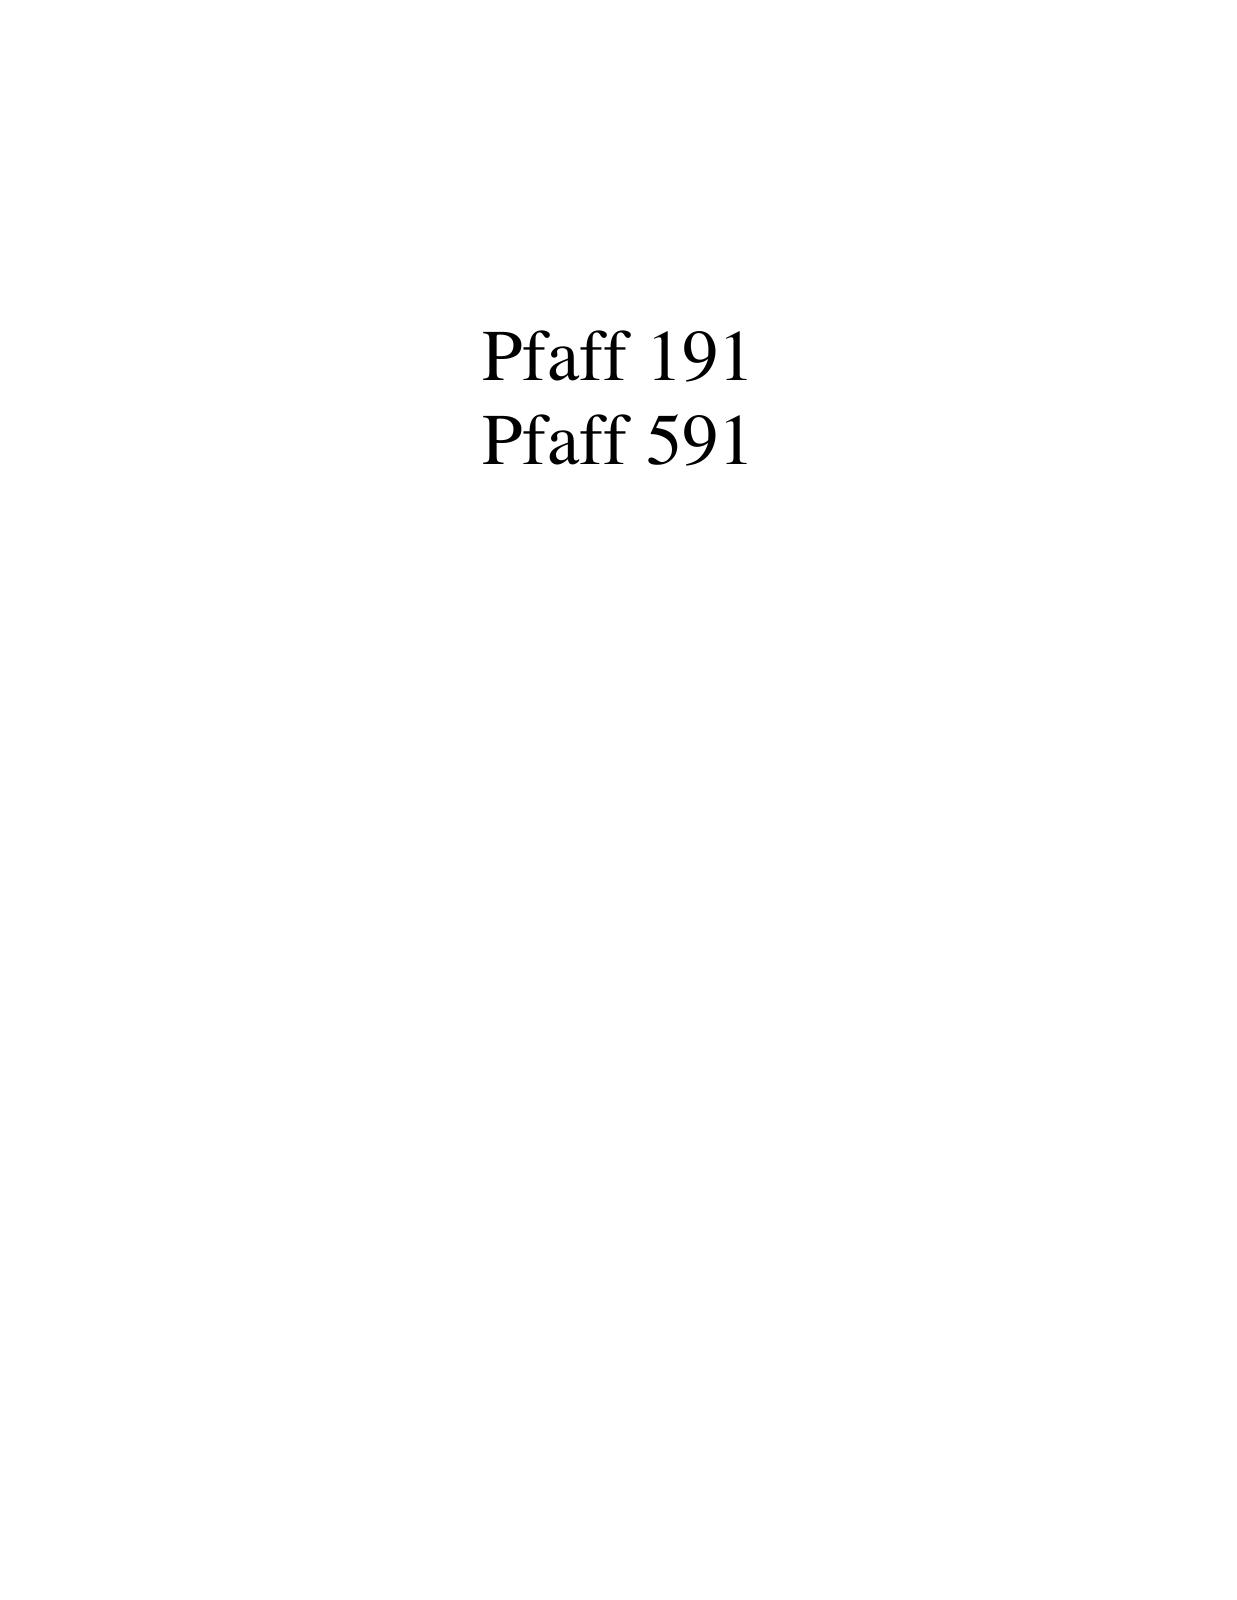 PFAFF 191, 591 Parts List